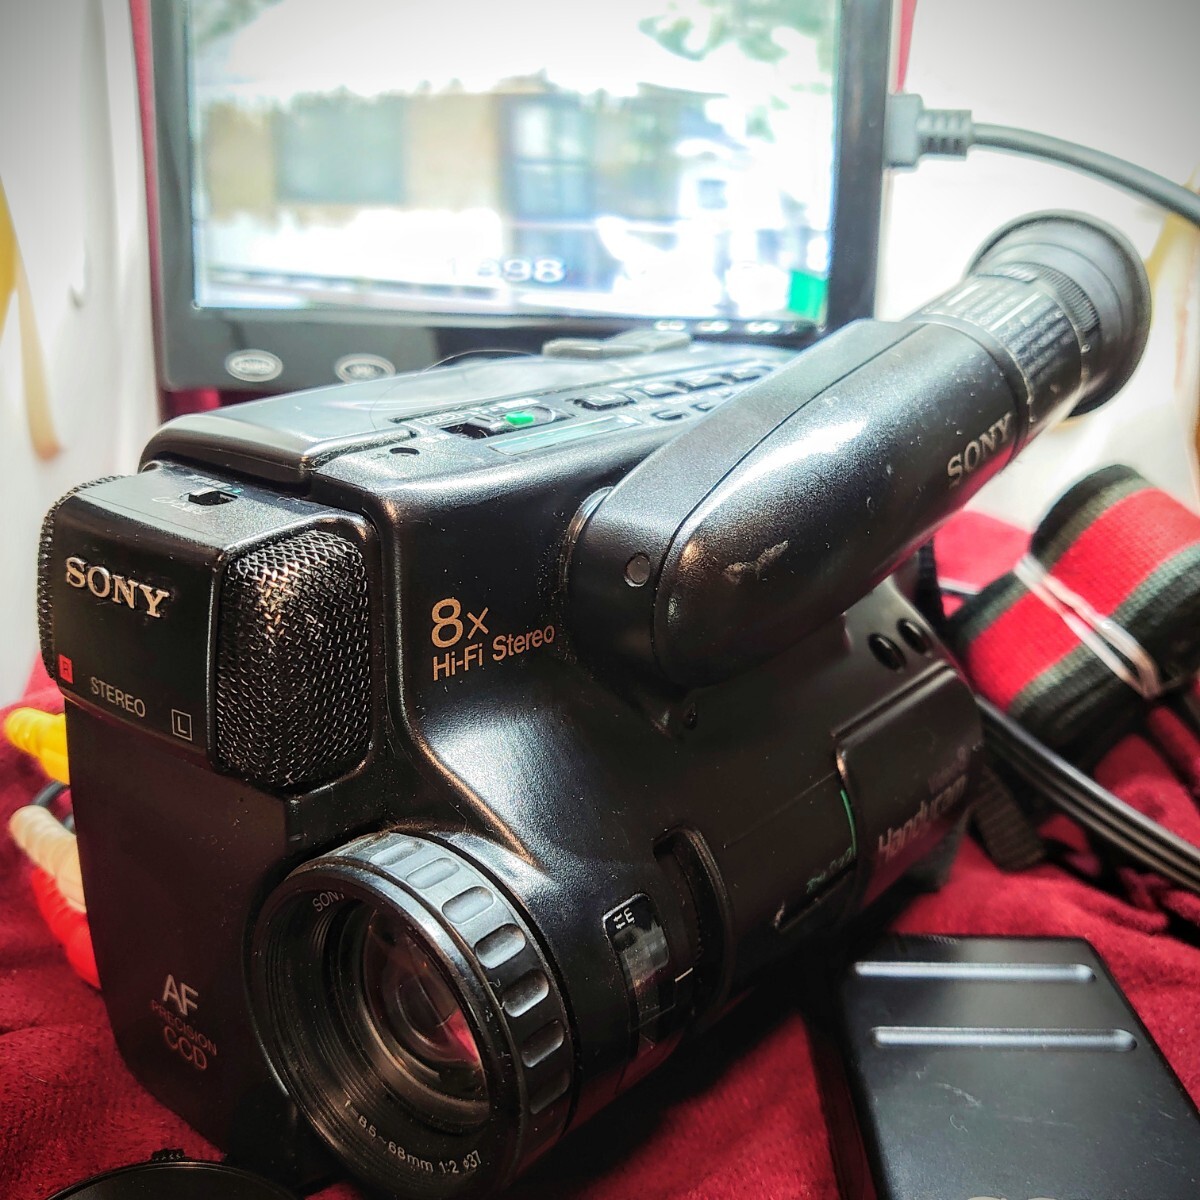 335【Video8テープ/再生/外部出力OK】SONY ビデオカメラ Handycam CCD-TR75 ソニー 本体 ACバッテリー充電器 他 箱付き ダビング等にの画像1